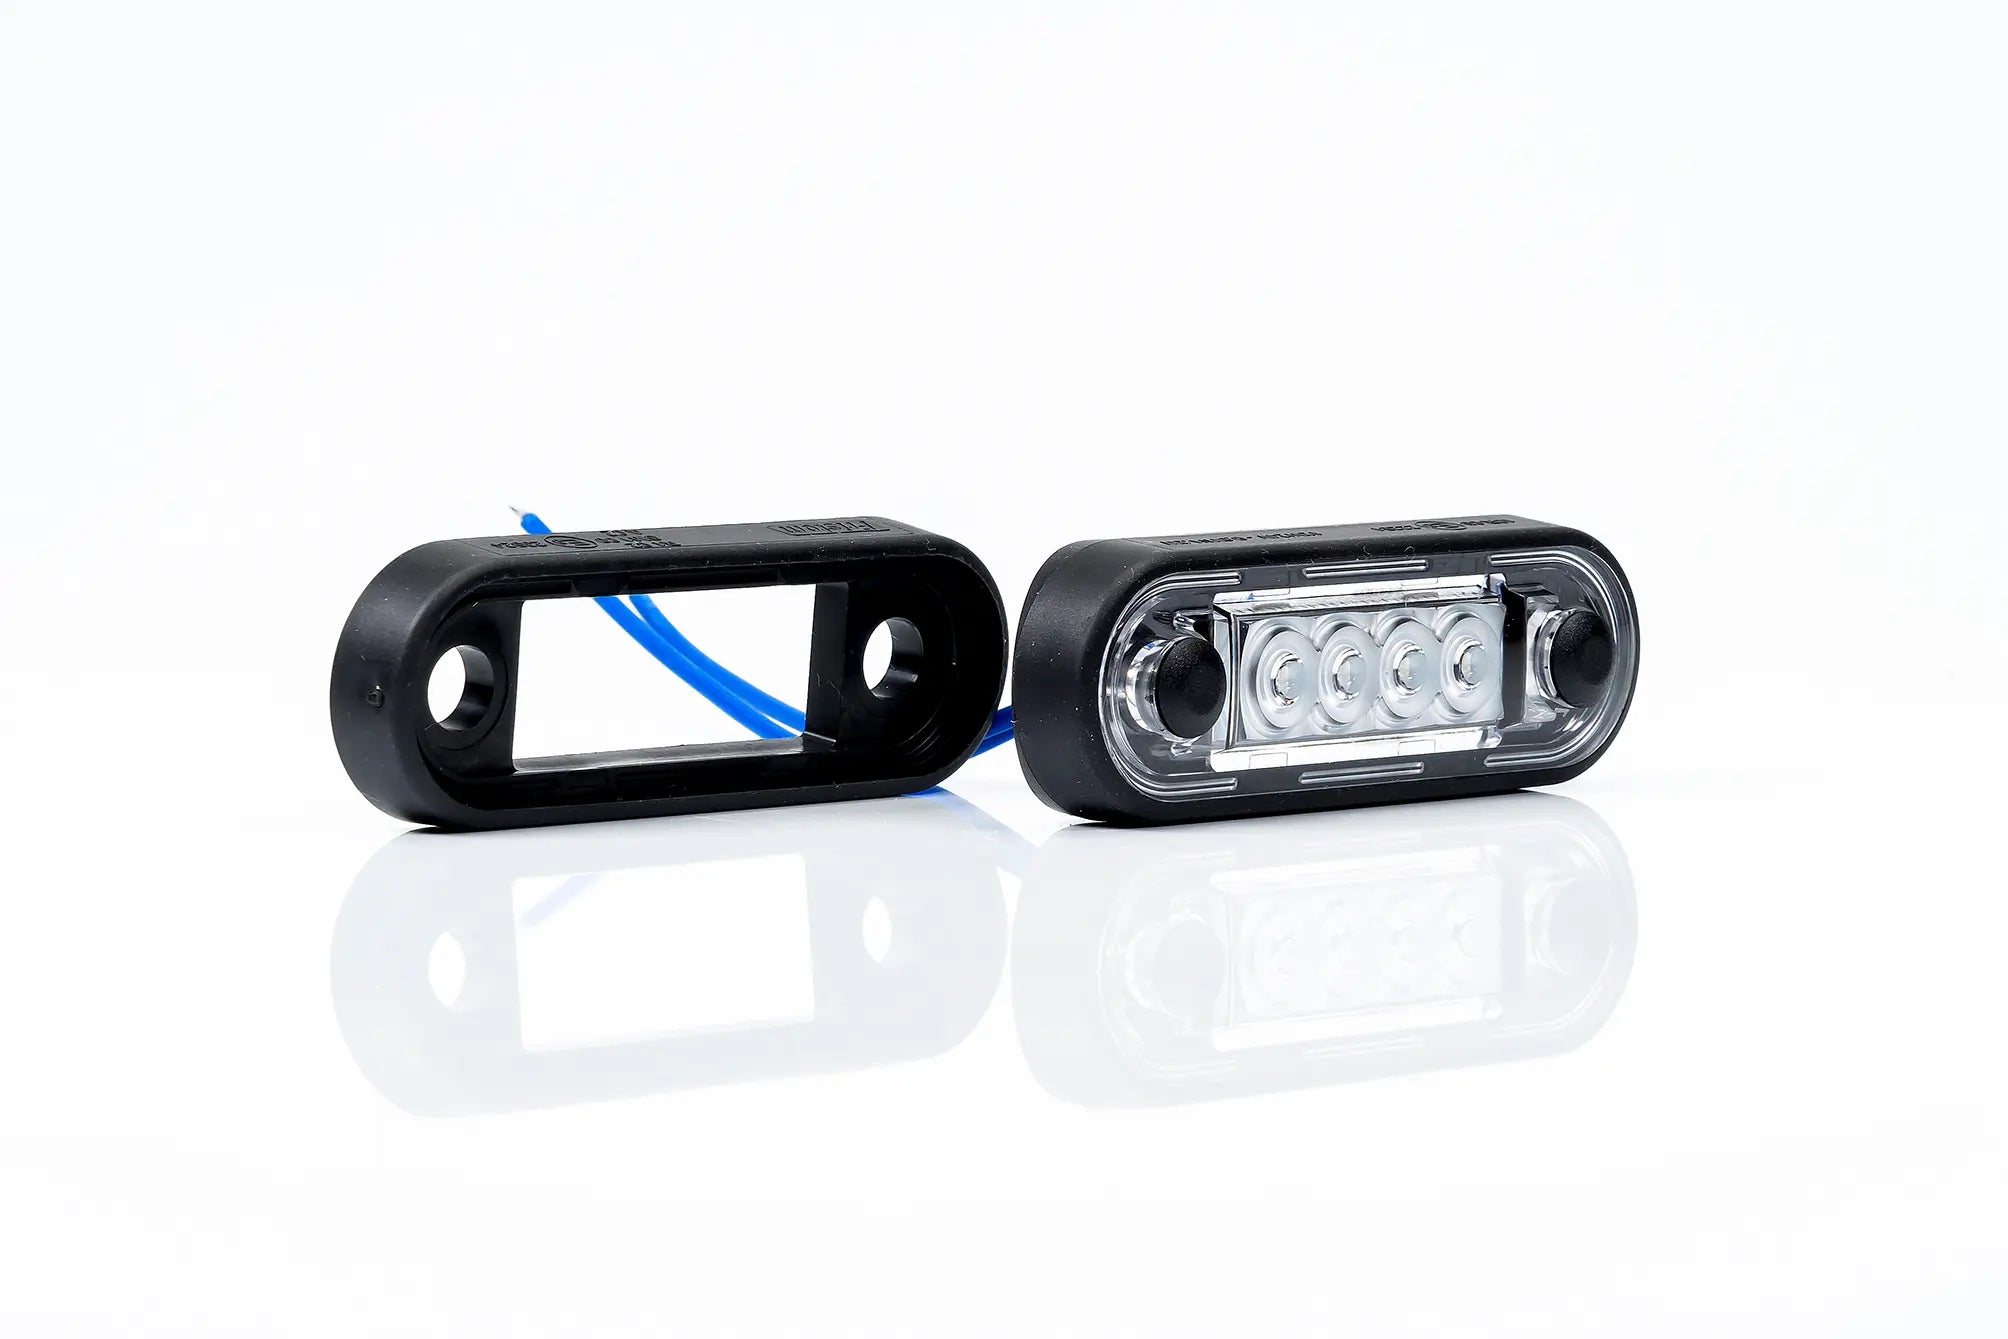 Luz marcadora LED premium para barras de caminhão e barras de touro - spo-cs-disabled - spo-default - spo-disabled - spo-notify-me-disa